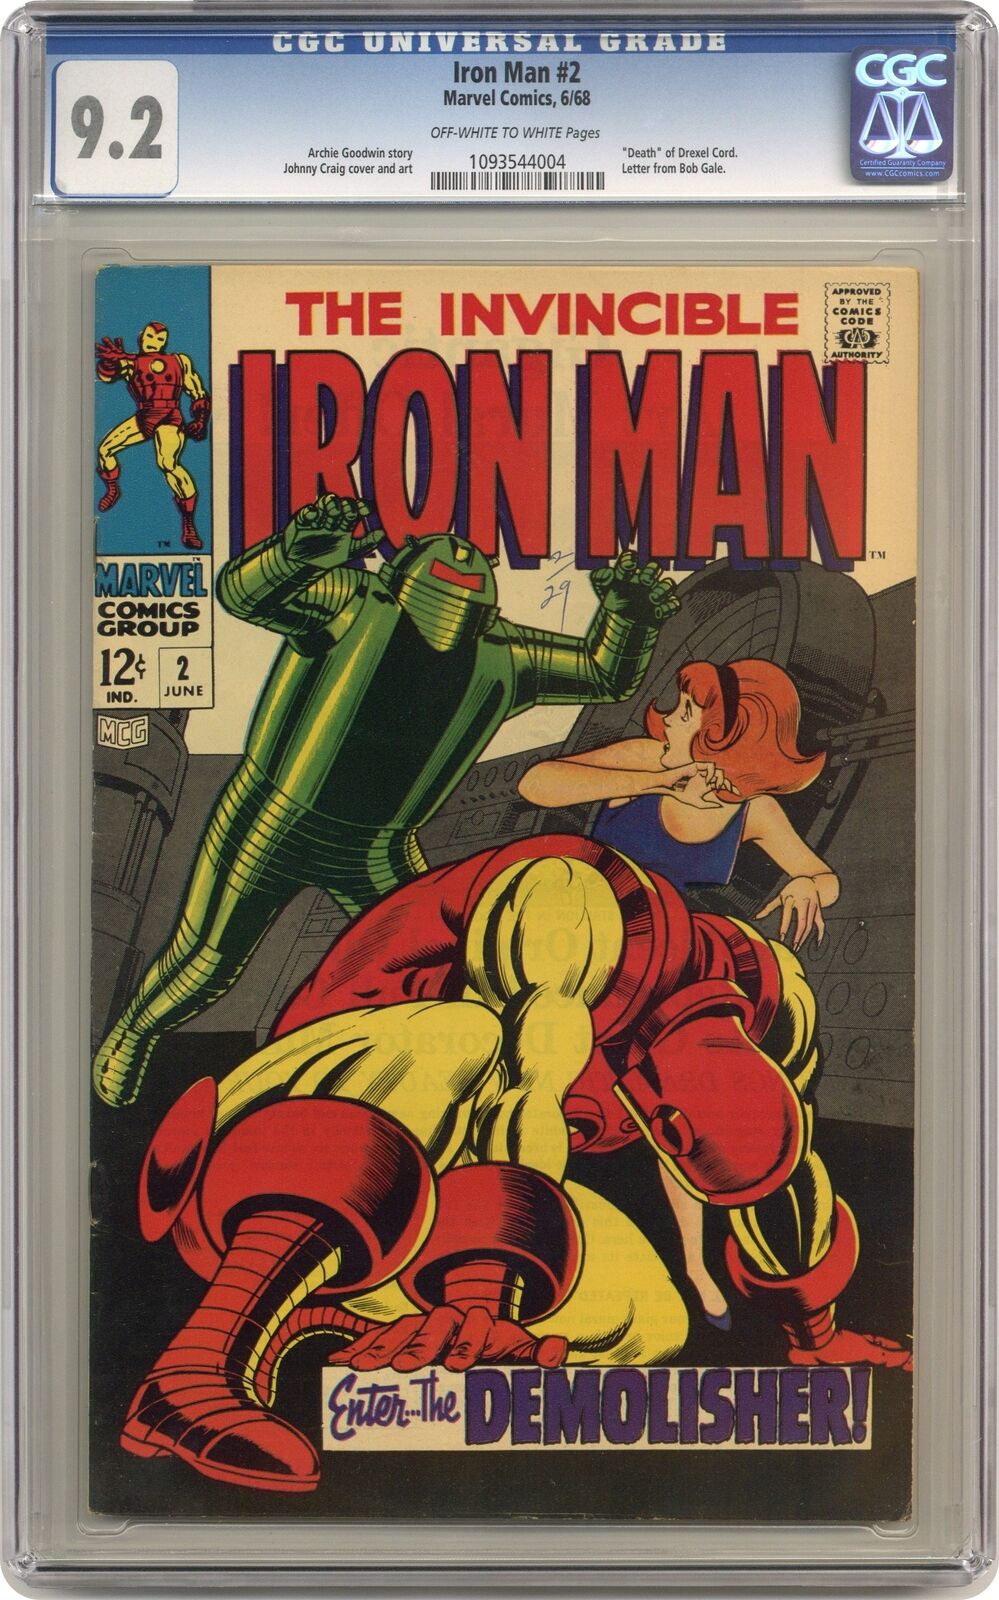 Iron Man #2 CGC 9.2 1968 1093544004